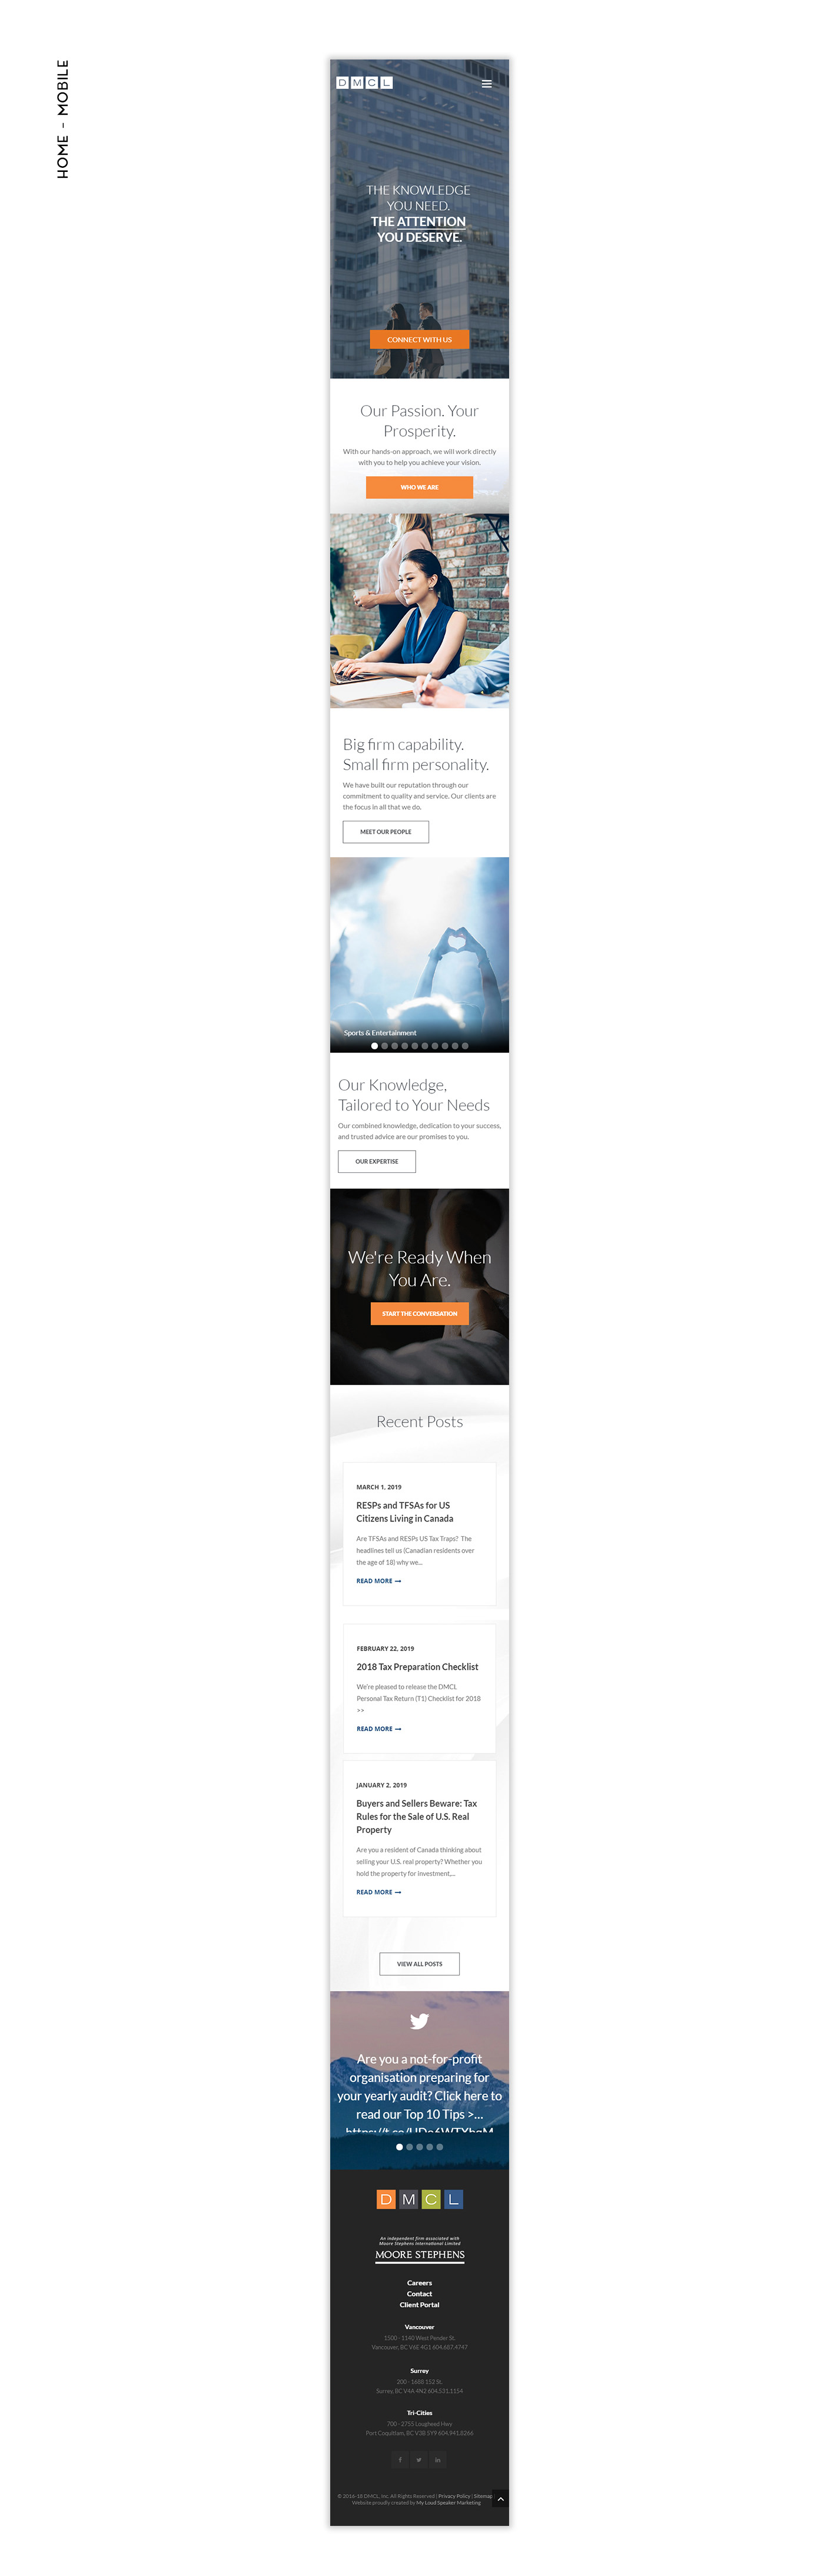 Website design icons financial monikaszucs feifei vancouver blue orange